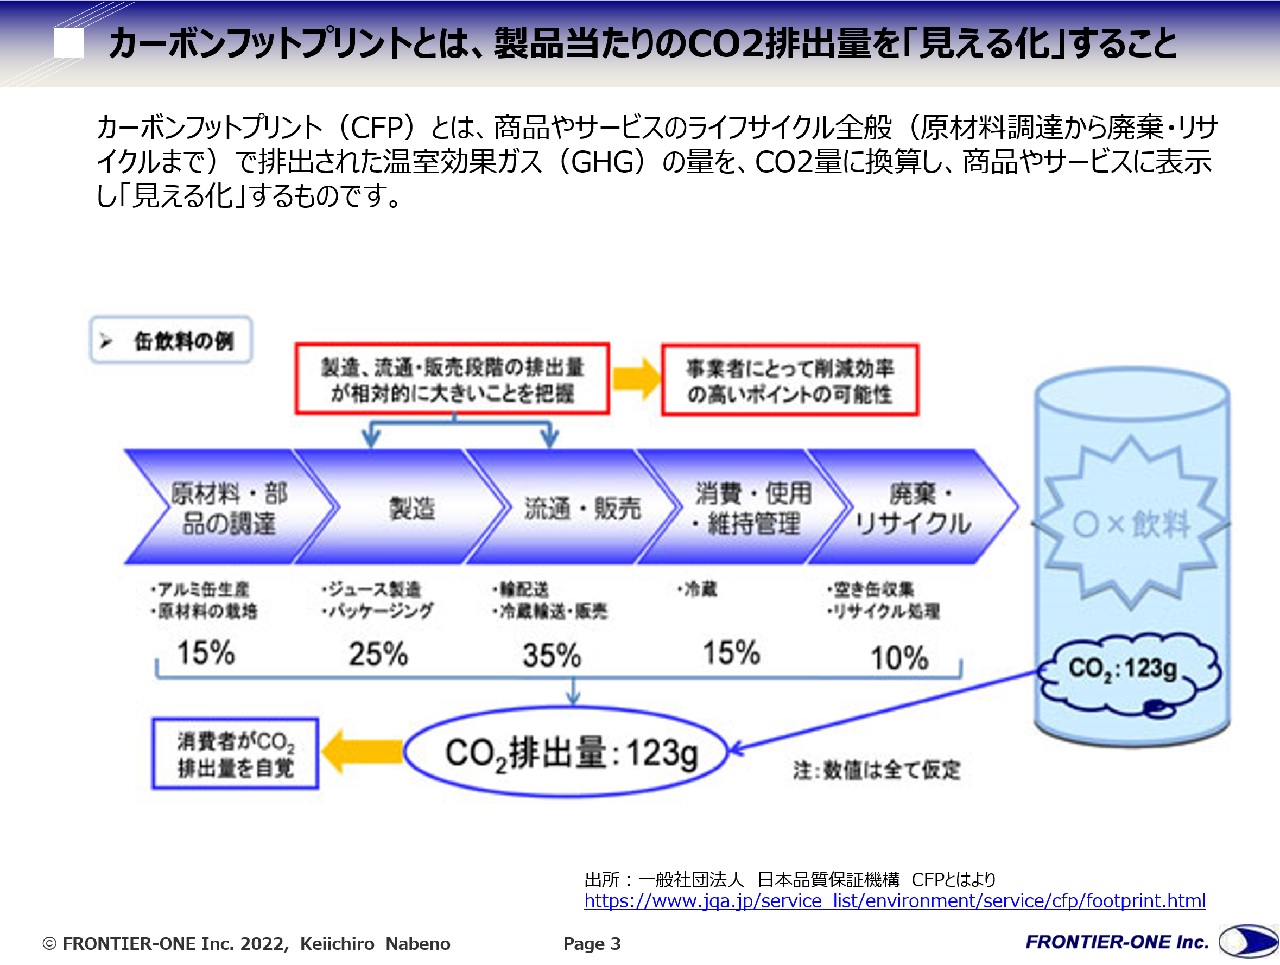 図2 カーボンフットプリントとは、製品当たりのCO2排出量を「見える化」すること